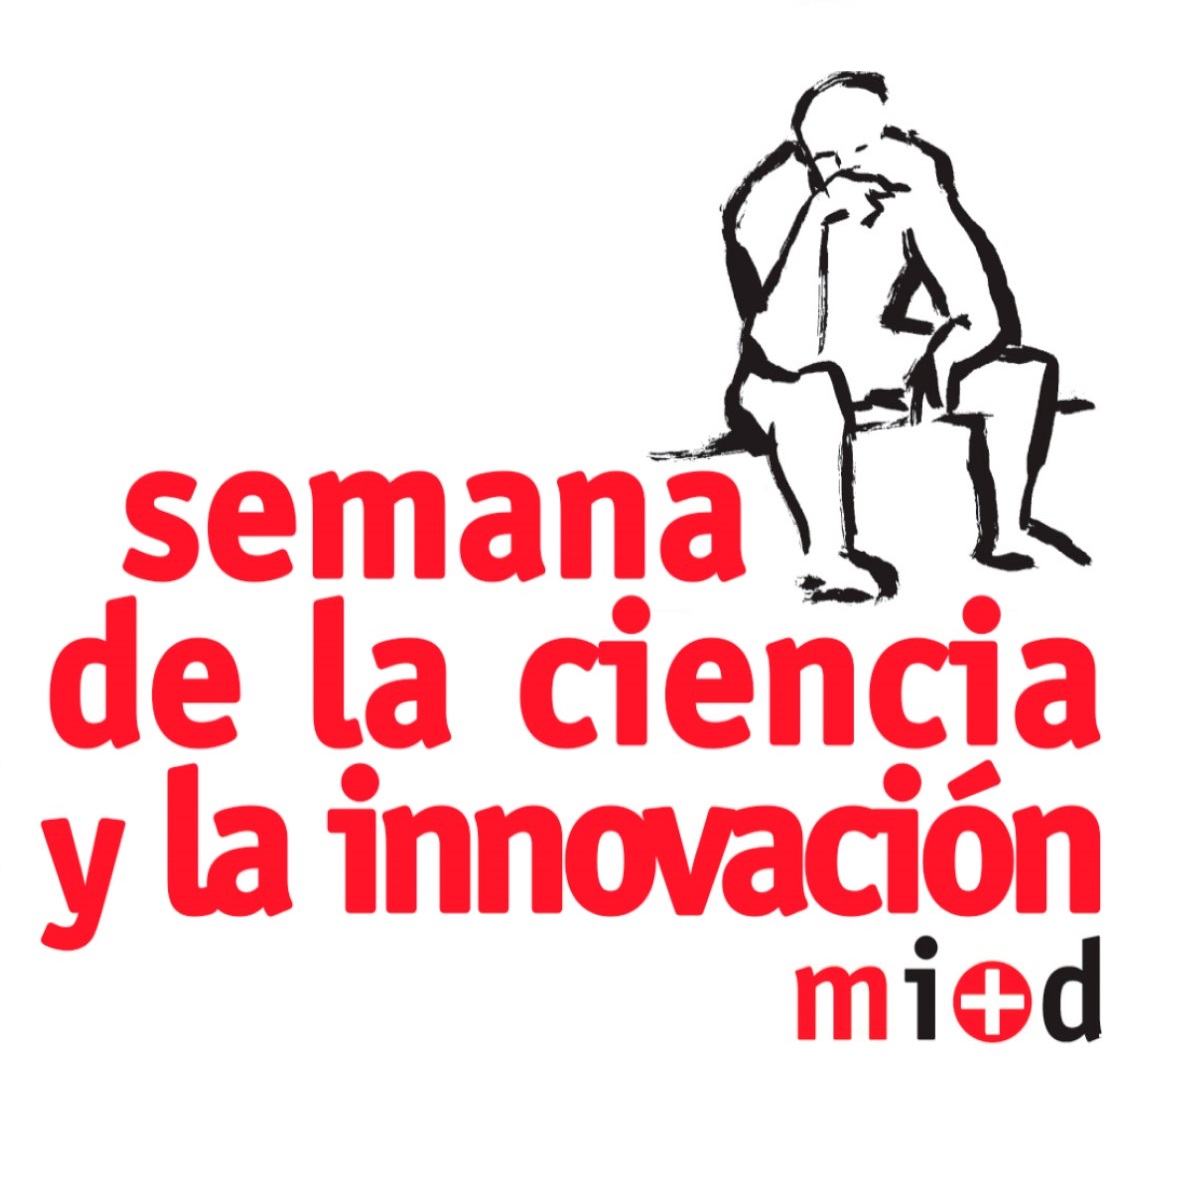 Los investigadores GET-MSCA participan en la Semana de la Ciencia y la Innovación de Madrid